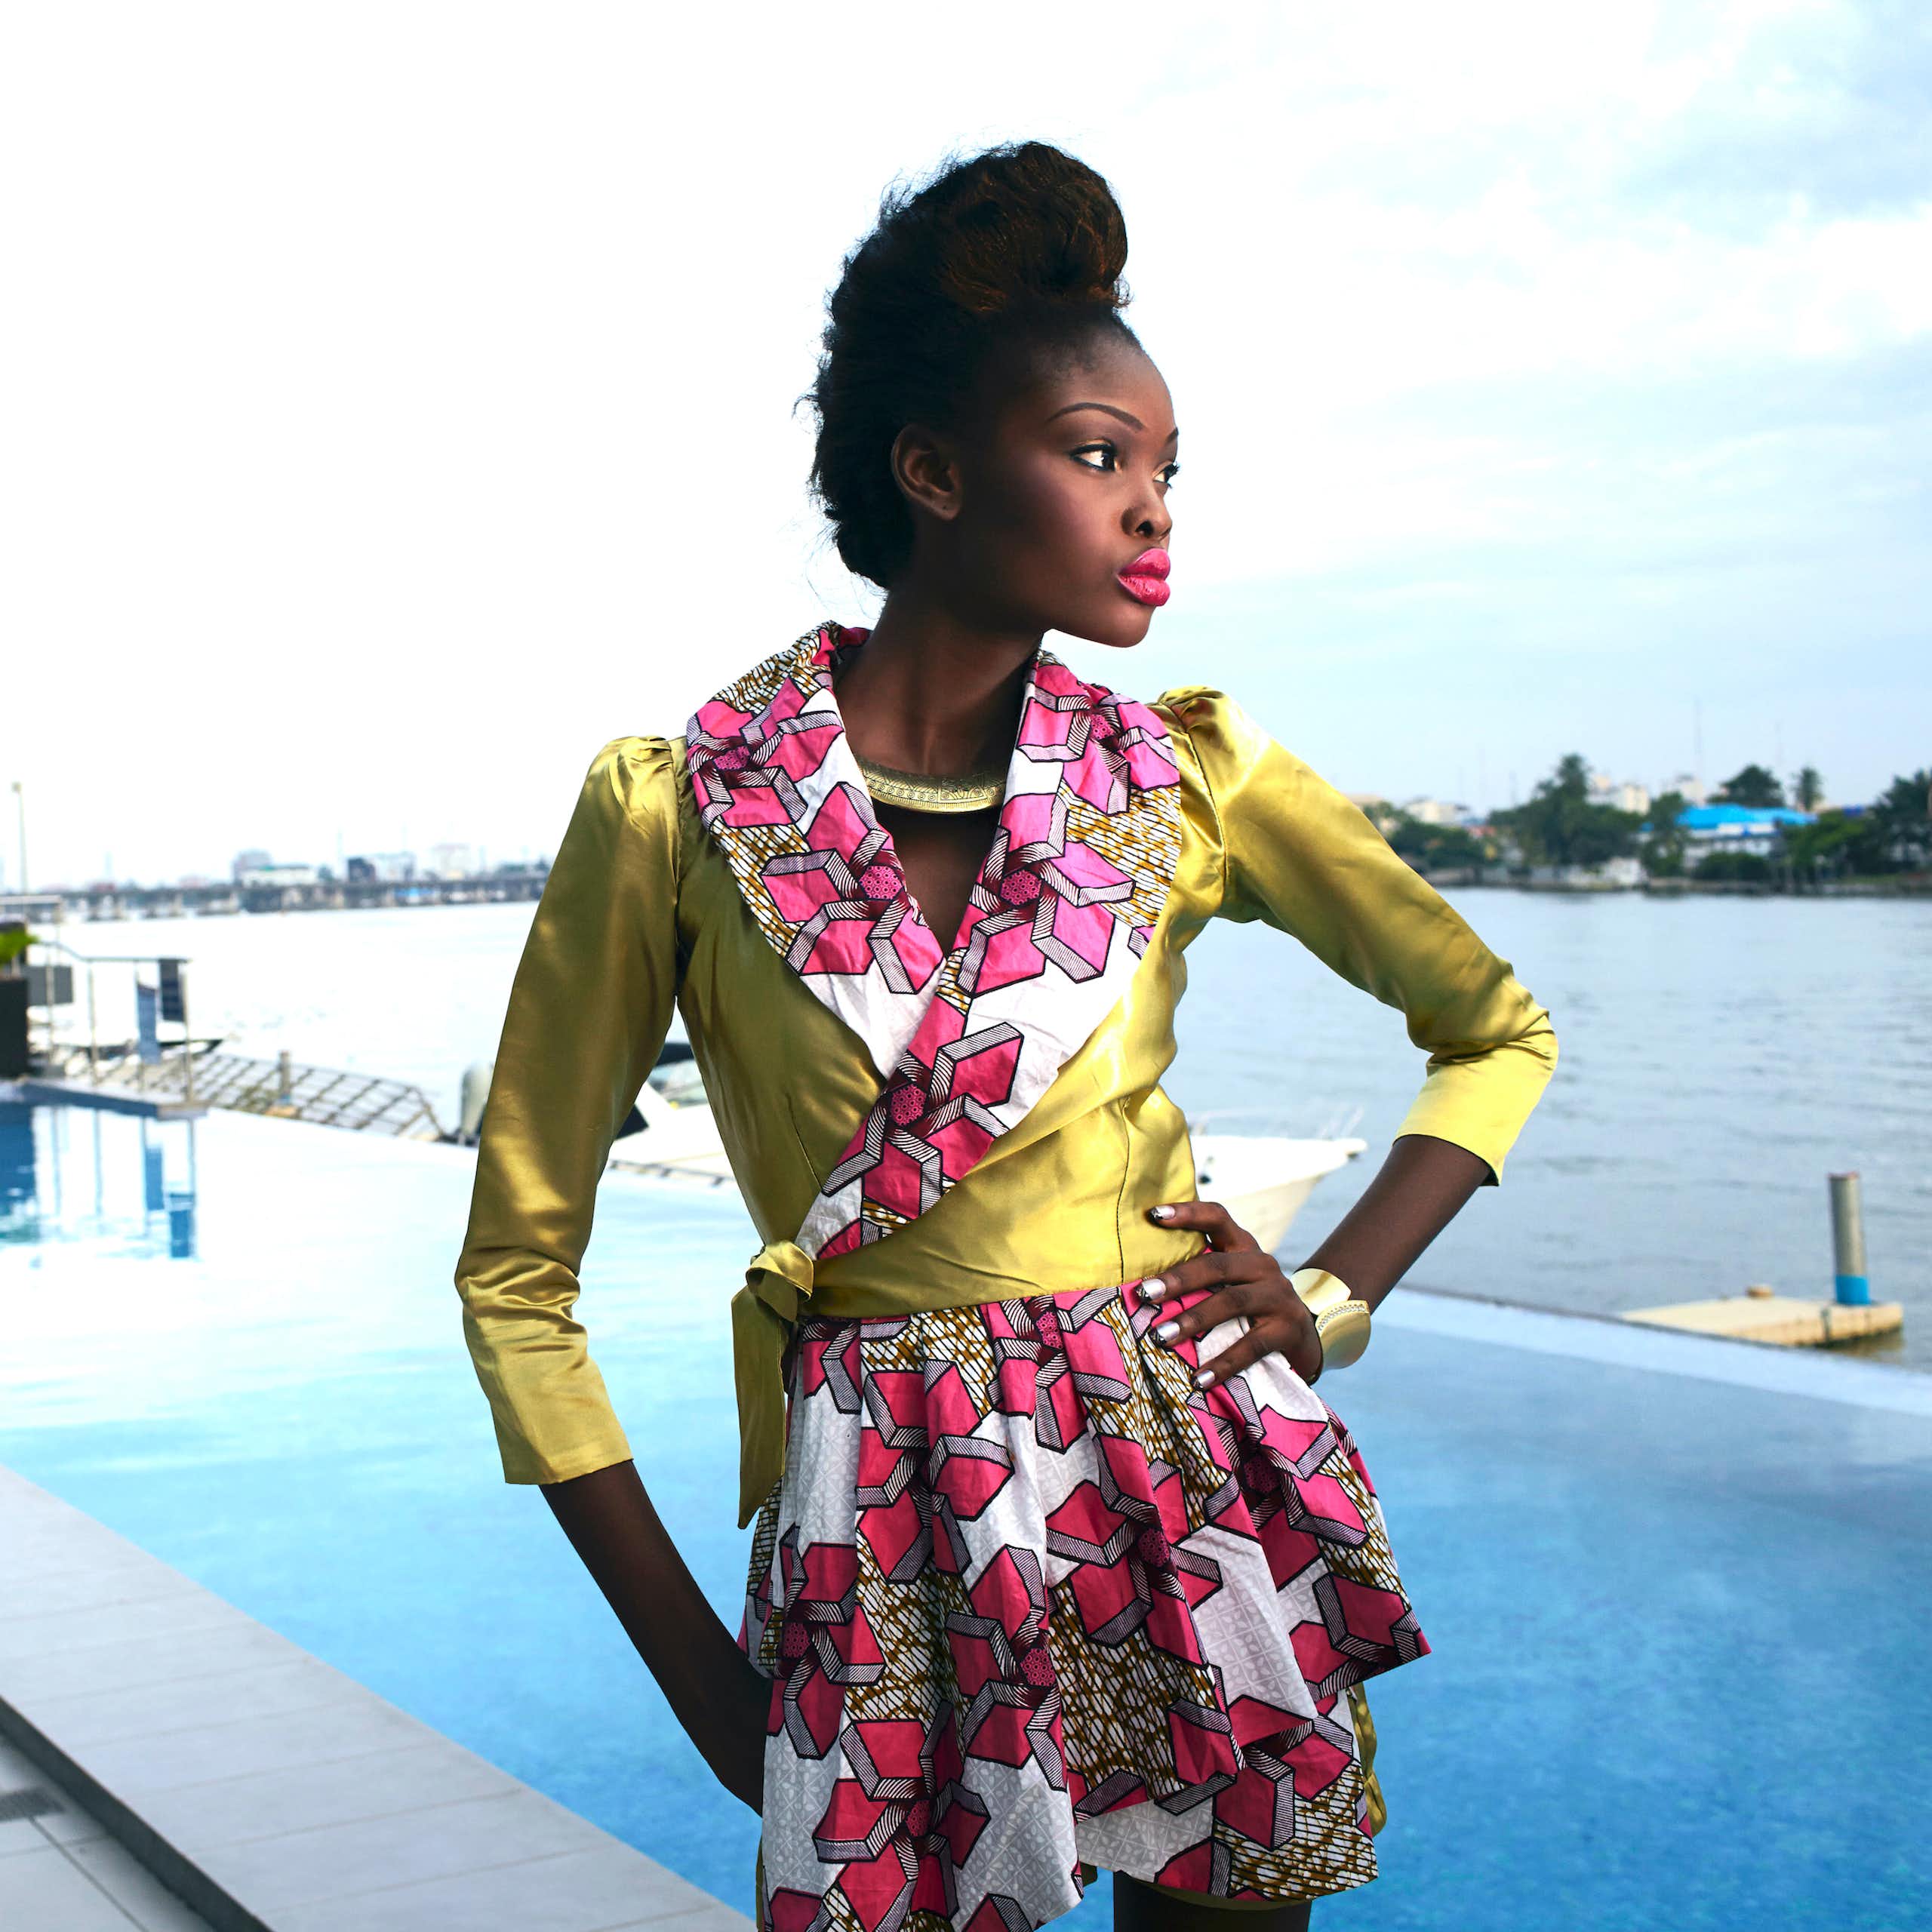 Les créateurs de mode d'Afrique de l'Ouest sont des leaders mondiaux en matière de production de vêtements durables